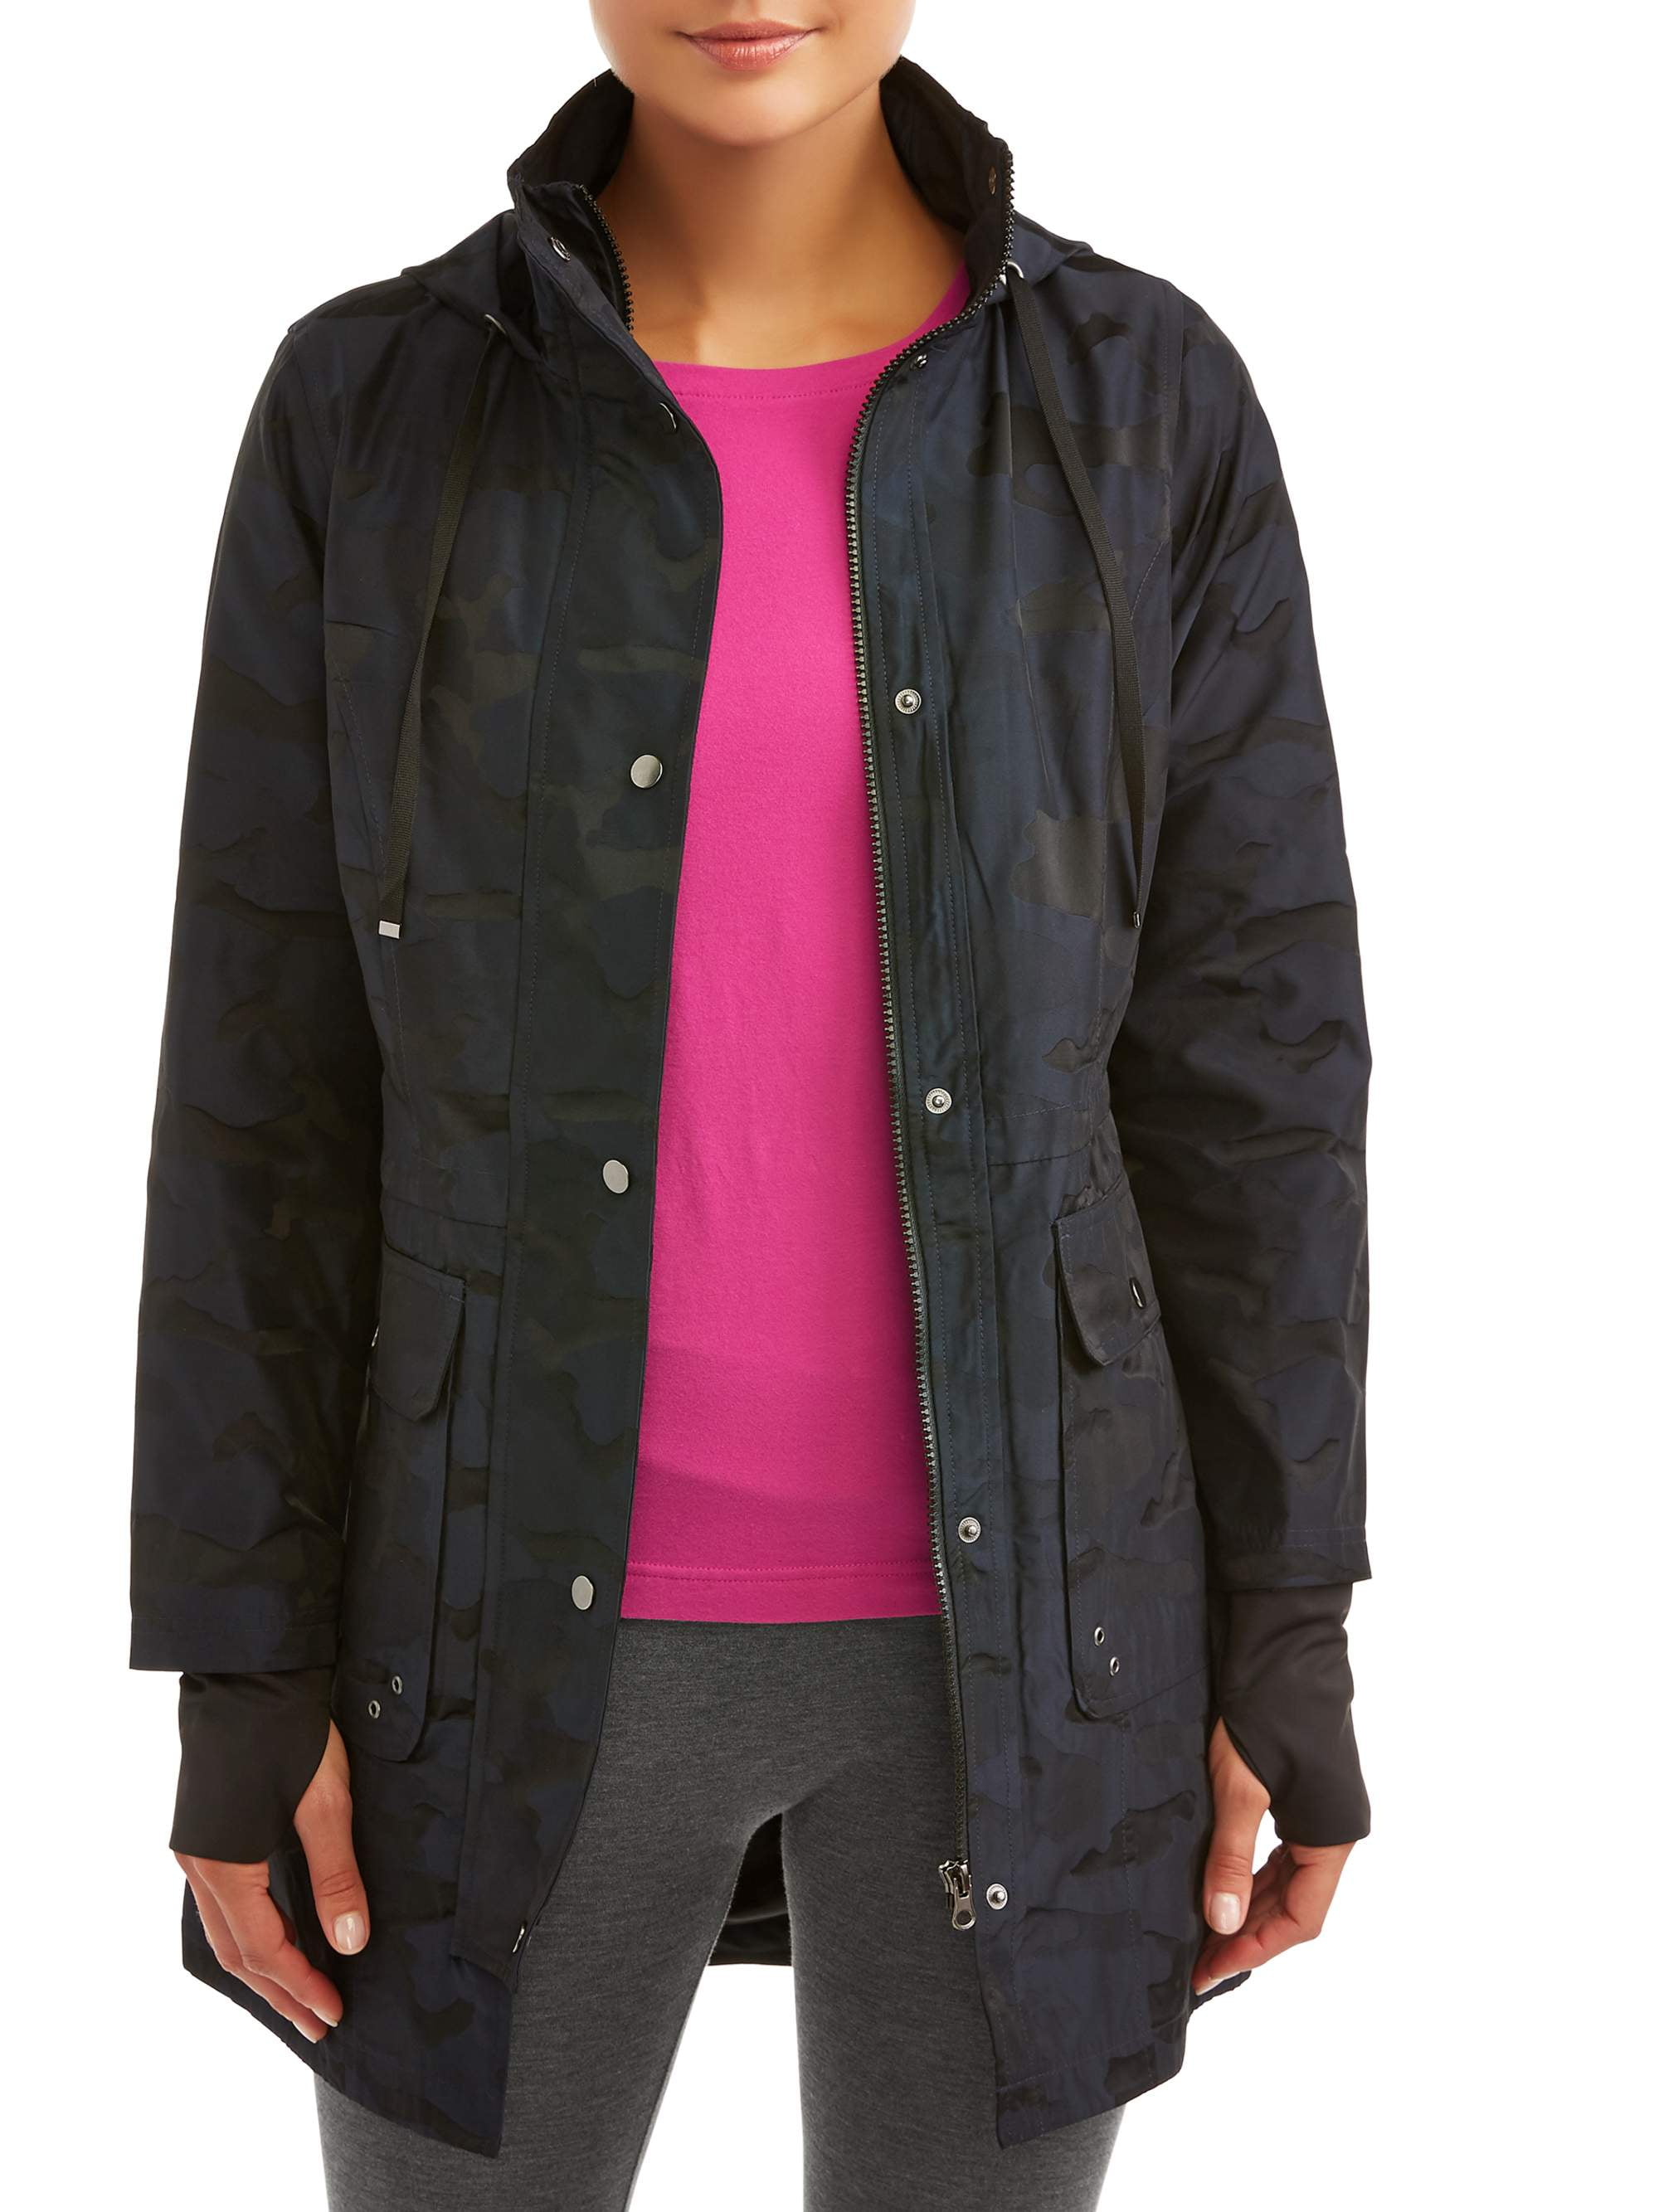 MissBloom Womens Junior Camo Printed Windbreaker Zip Up Jacket